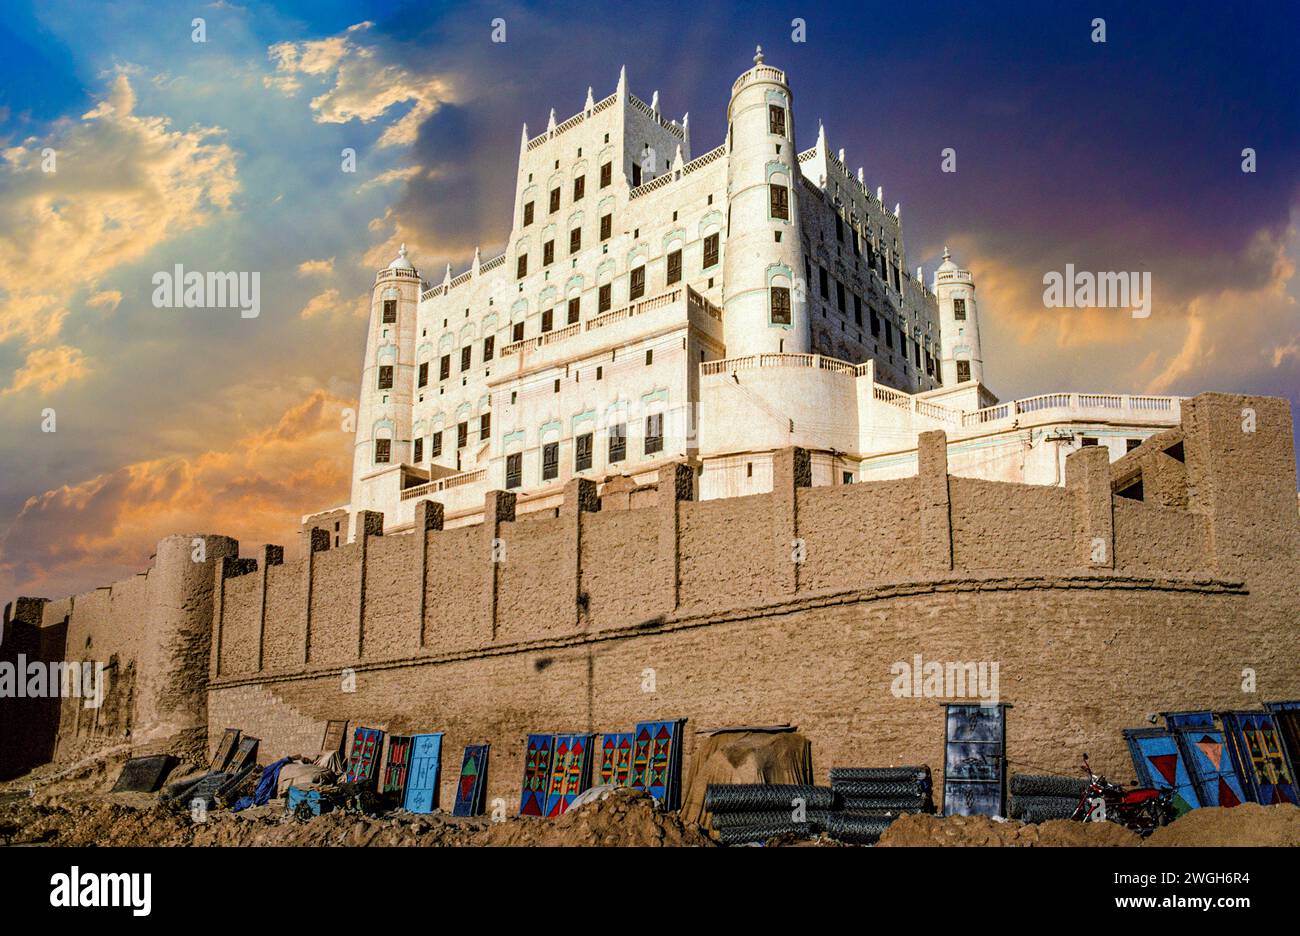 Sultans Palace, Seyun, Wadi Hadramaut, South Yemen Stock Photo